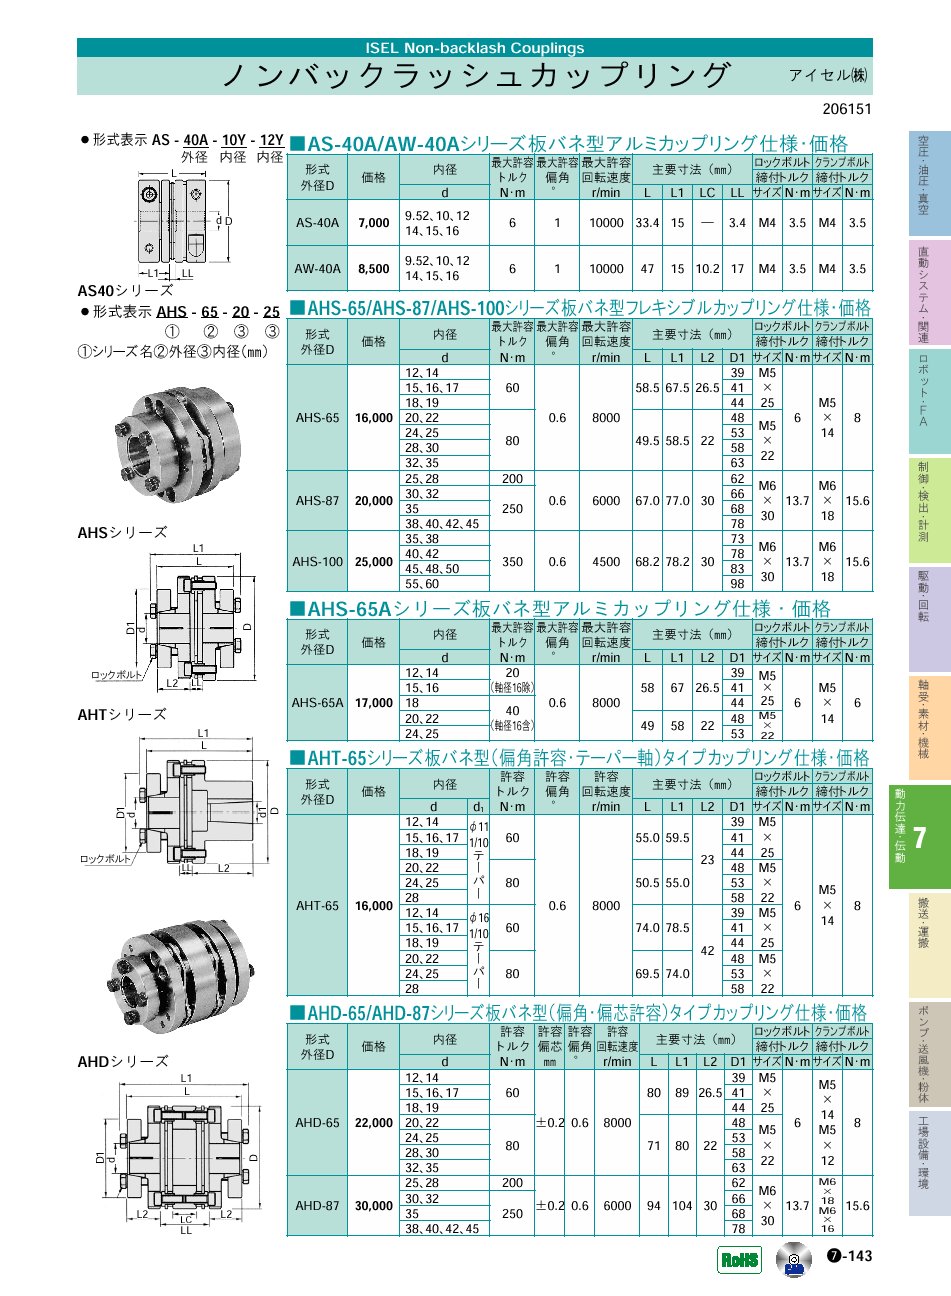 アイセル(株)　ノンバックラッシュカップリング　動力伝達・伝動機器　P07-143 価格